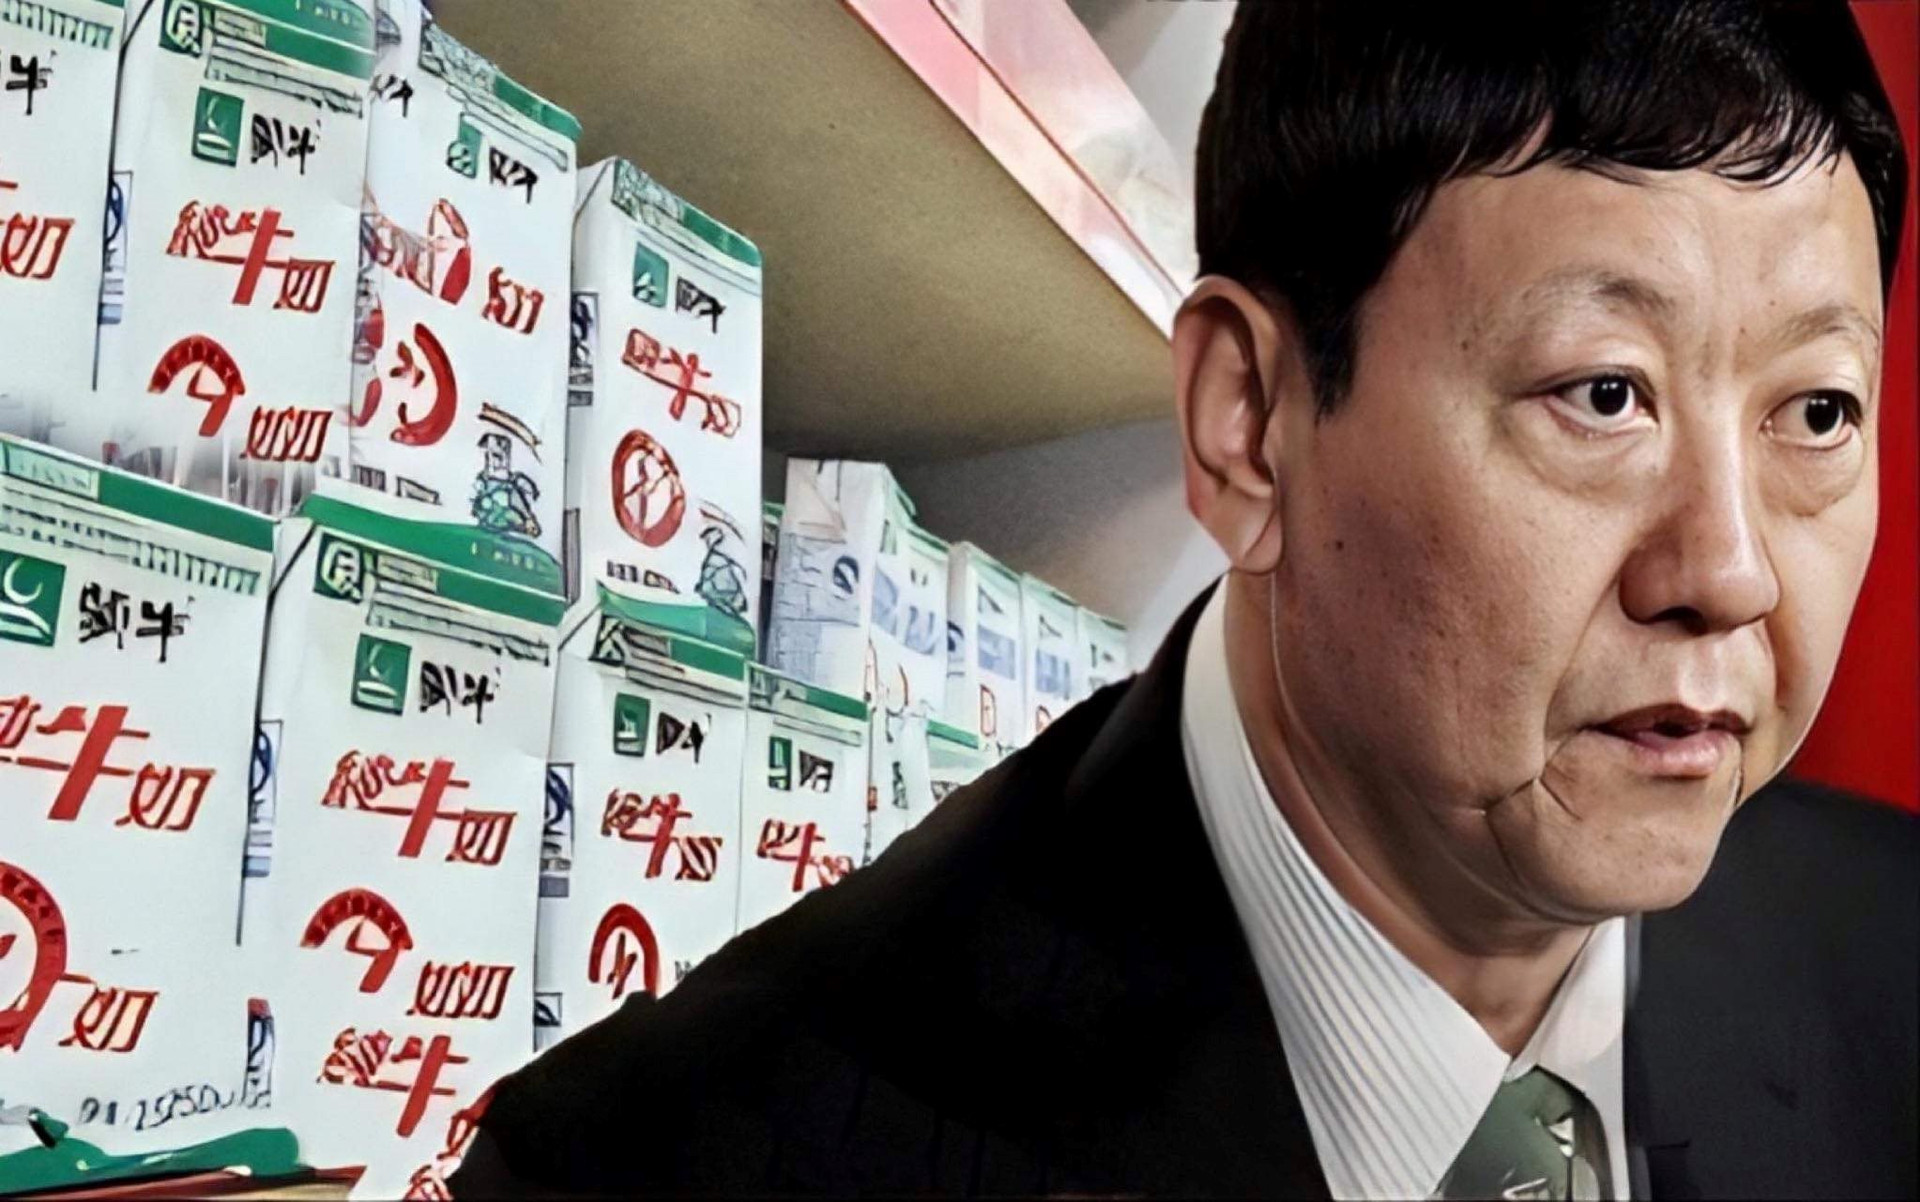 Làm tỷ phú gian nan như “Á vương ngành sữa” Trung Quốc: Rời công ty gắn bó suốt 10 năm vì “bất hòa”, lập doanh nghiệp mới thì “vận đen” giáng xuống, lao đao mãi mới được nghỉ hưu - Ảnh 1.